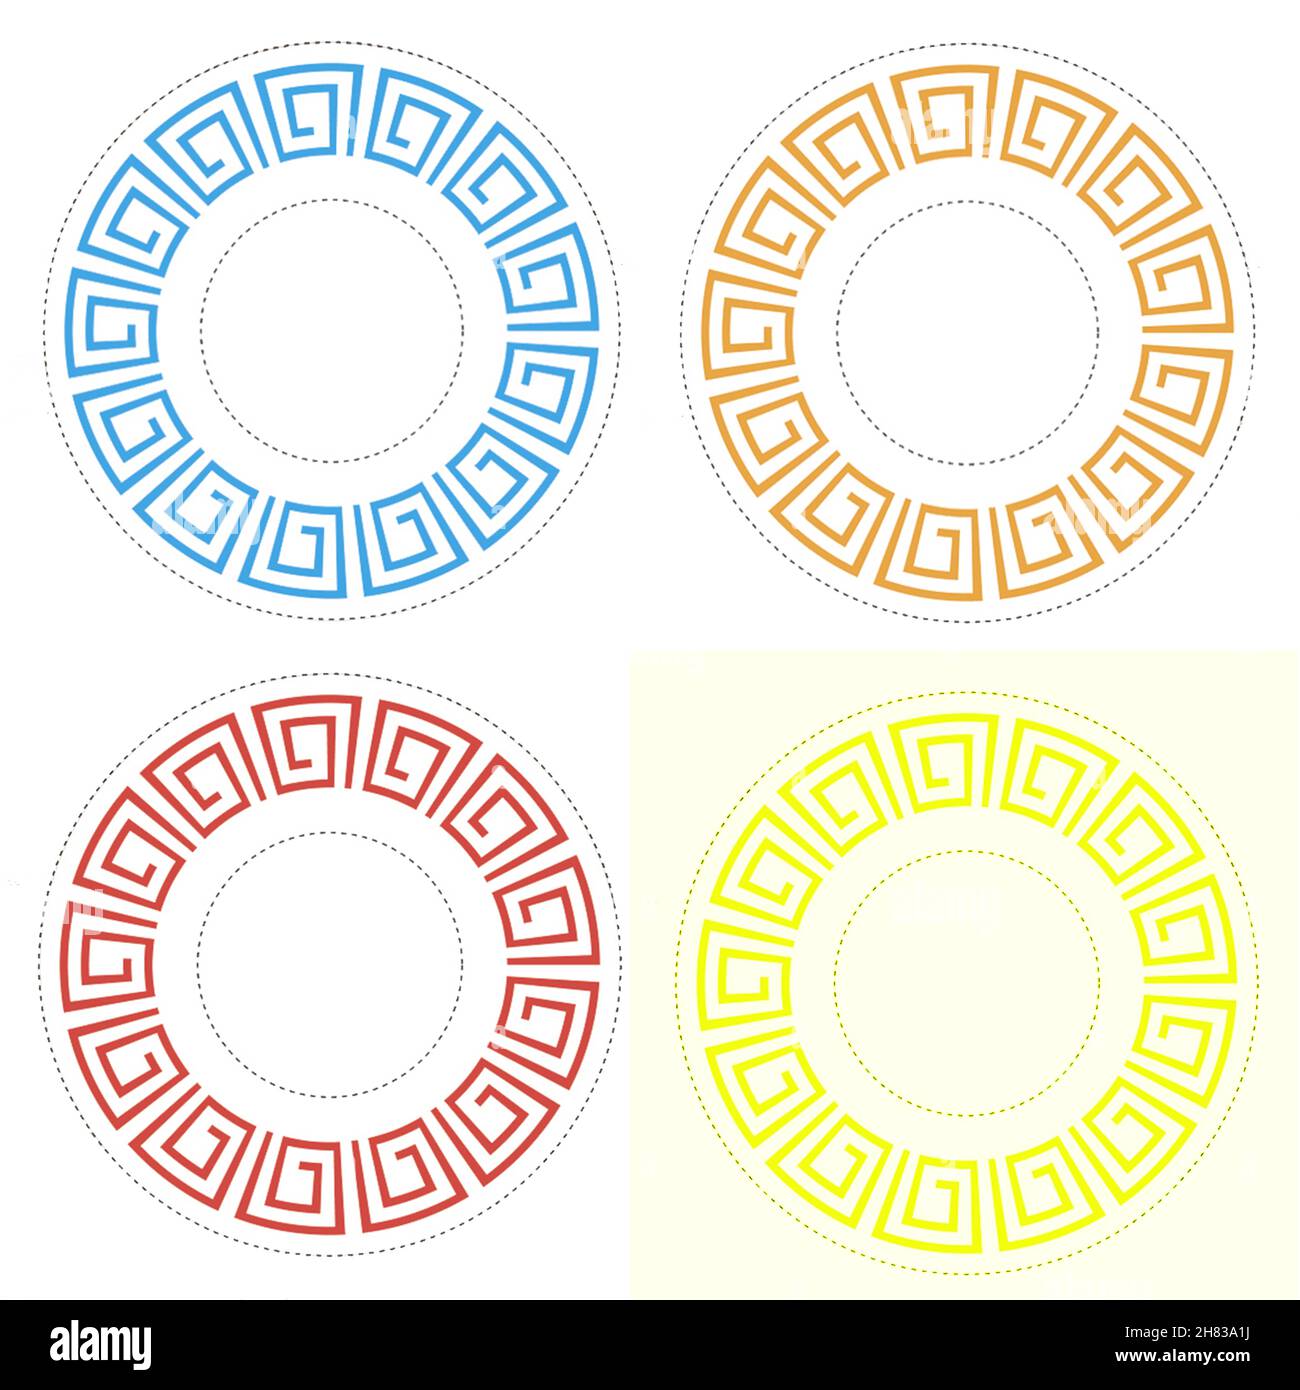 Icônes de plaque avec des motifs grecs de couleur isolés sur fond blanc, illustration.Collection d'icônes rondes texturées, muffins circulaires ou petits gâteaux Banque D'Images